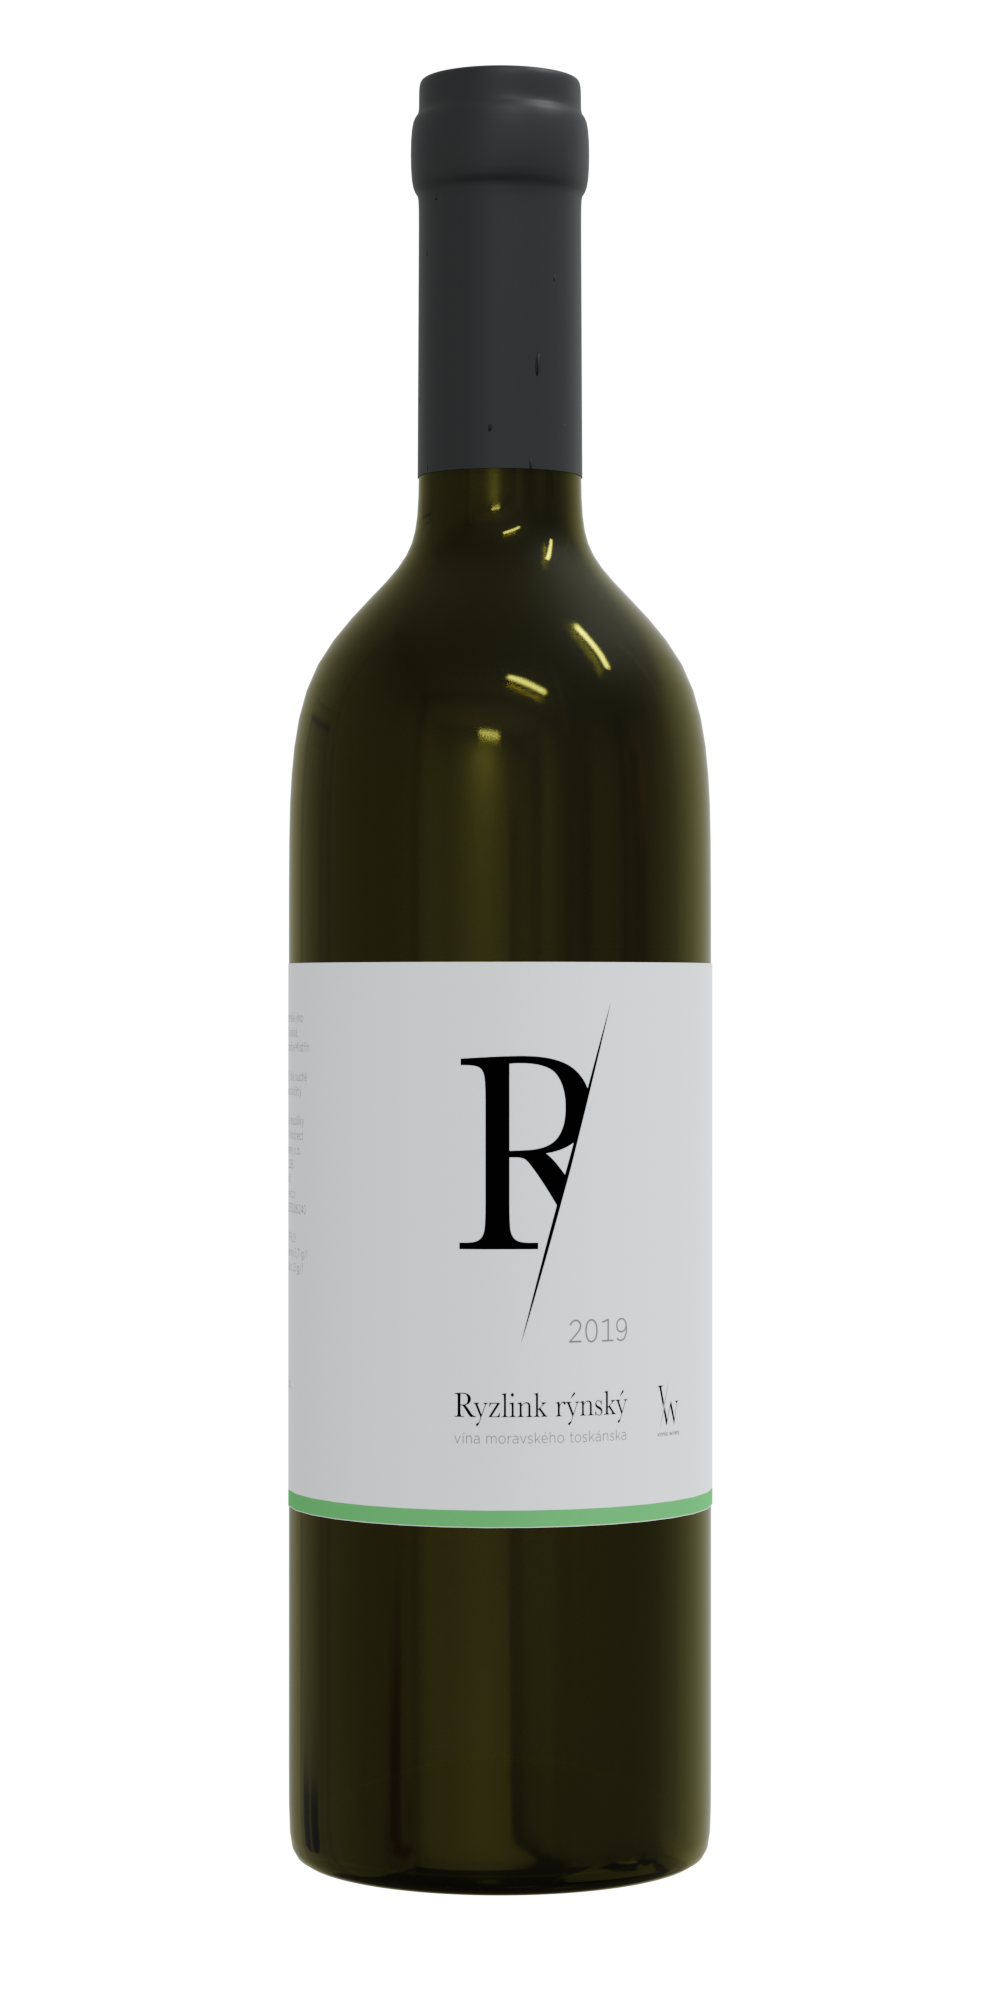 Vinnio Winery - Ryzlink rýnský 2019